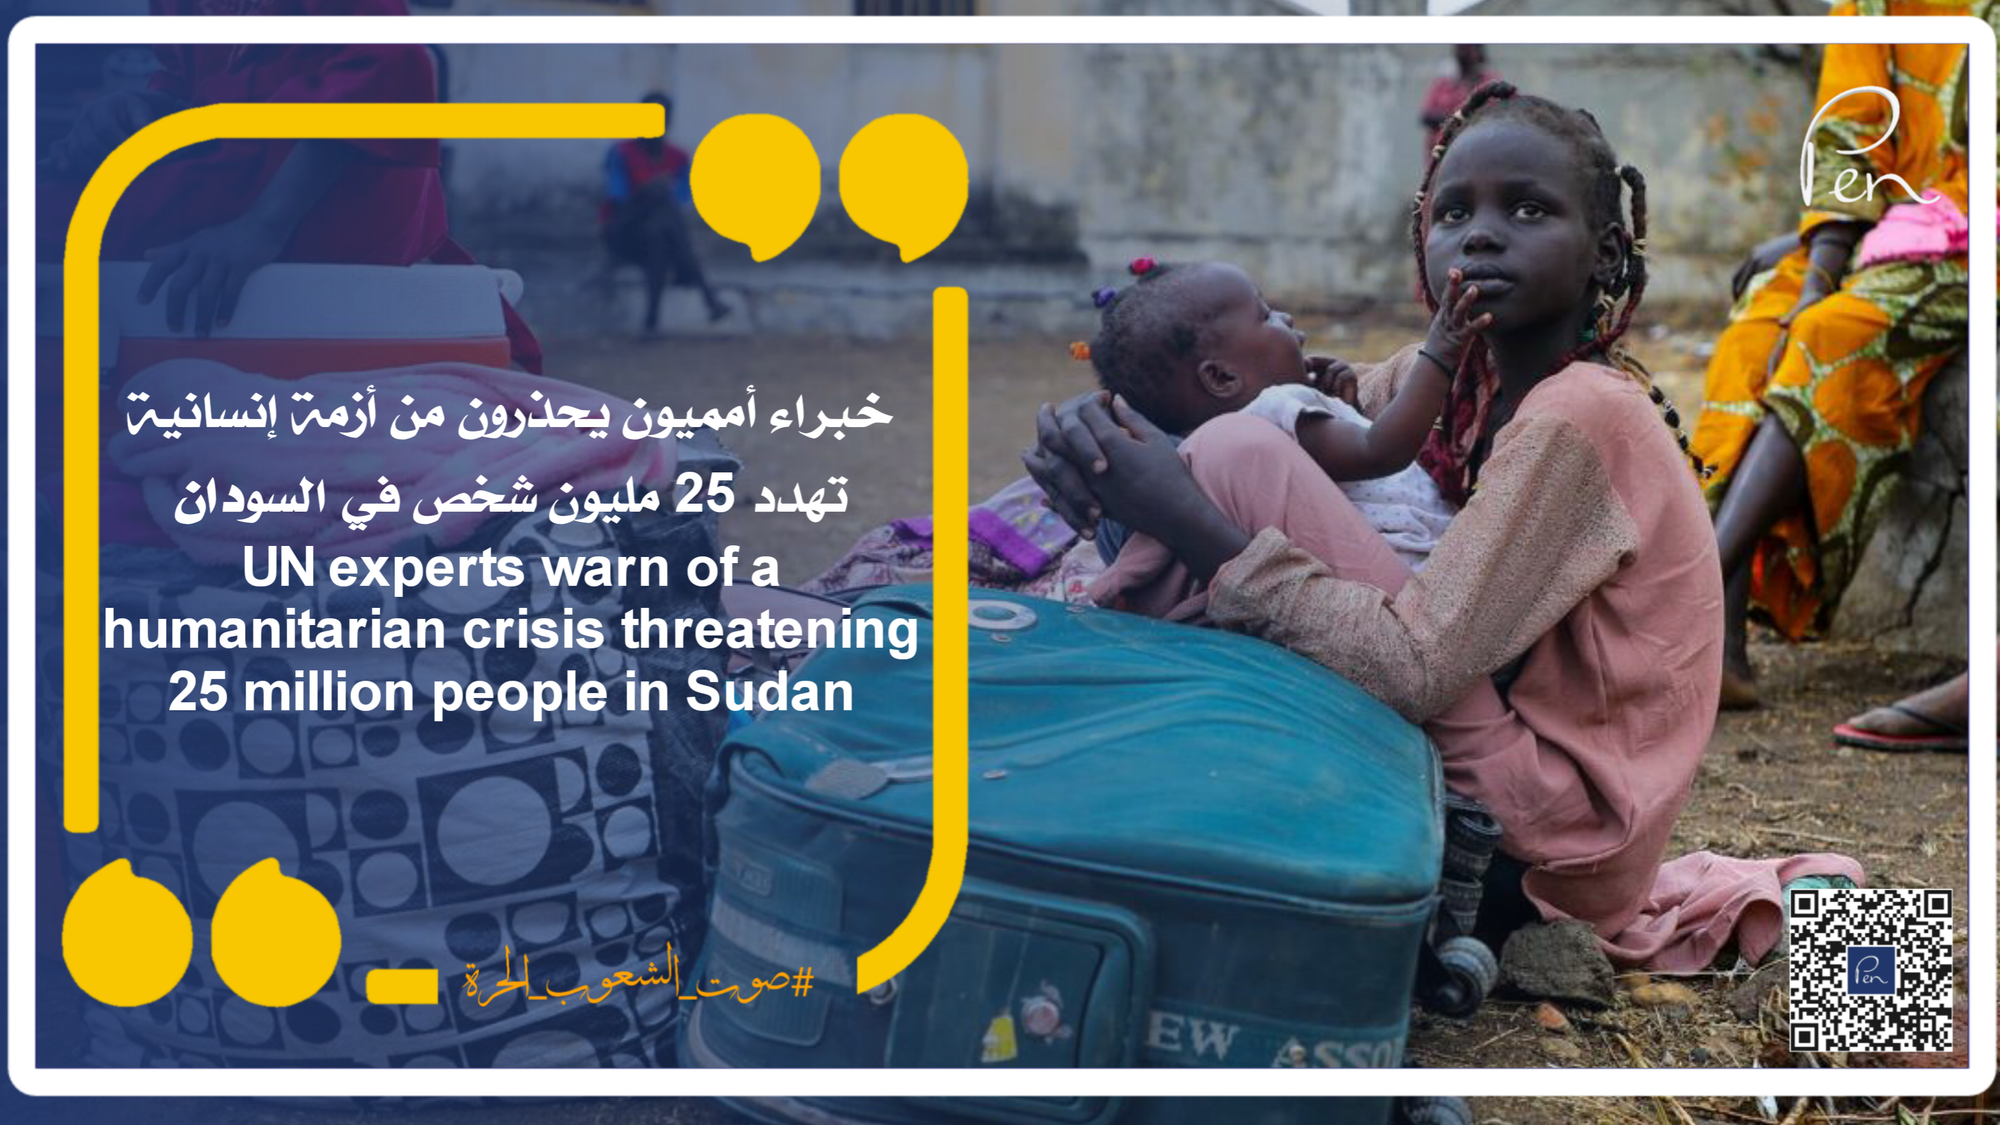 خبراء أمميون يحذرون من أزمة إنسانية تهدد 25 مليون شخص في السودان